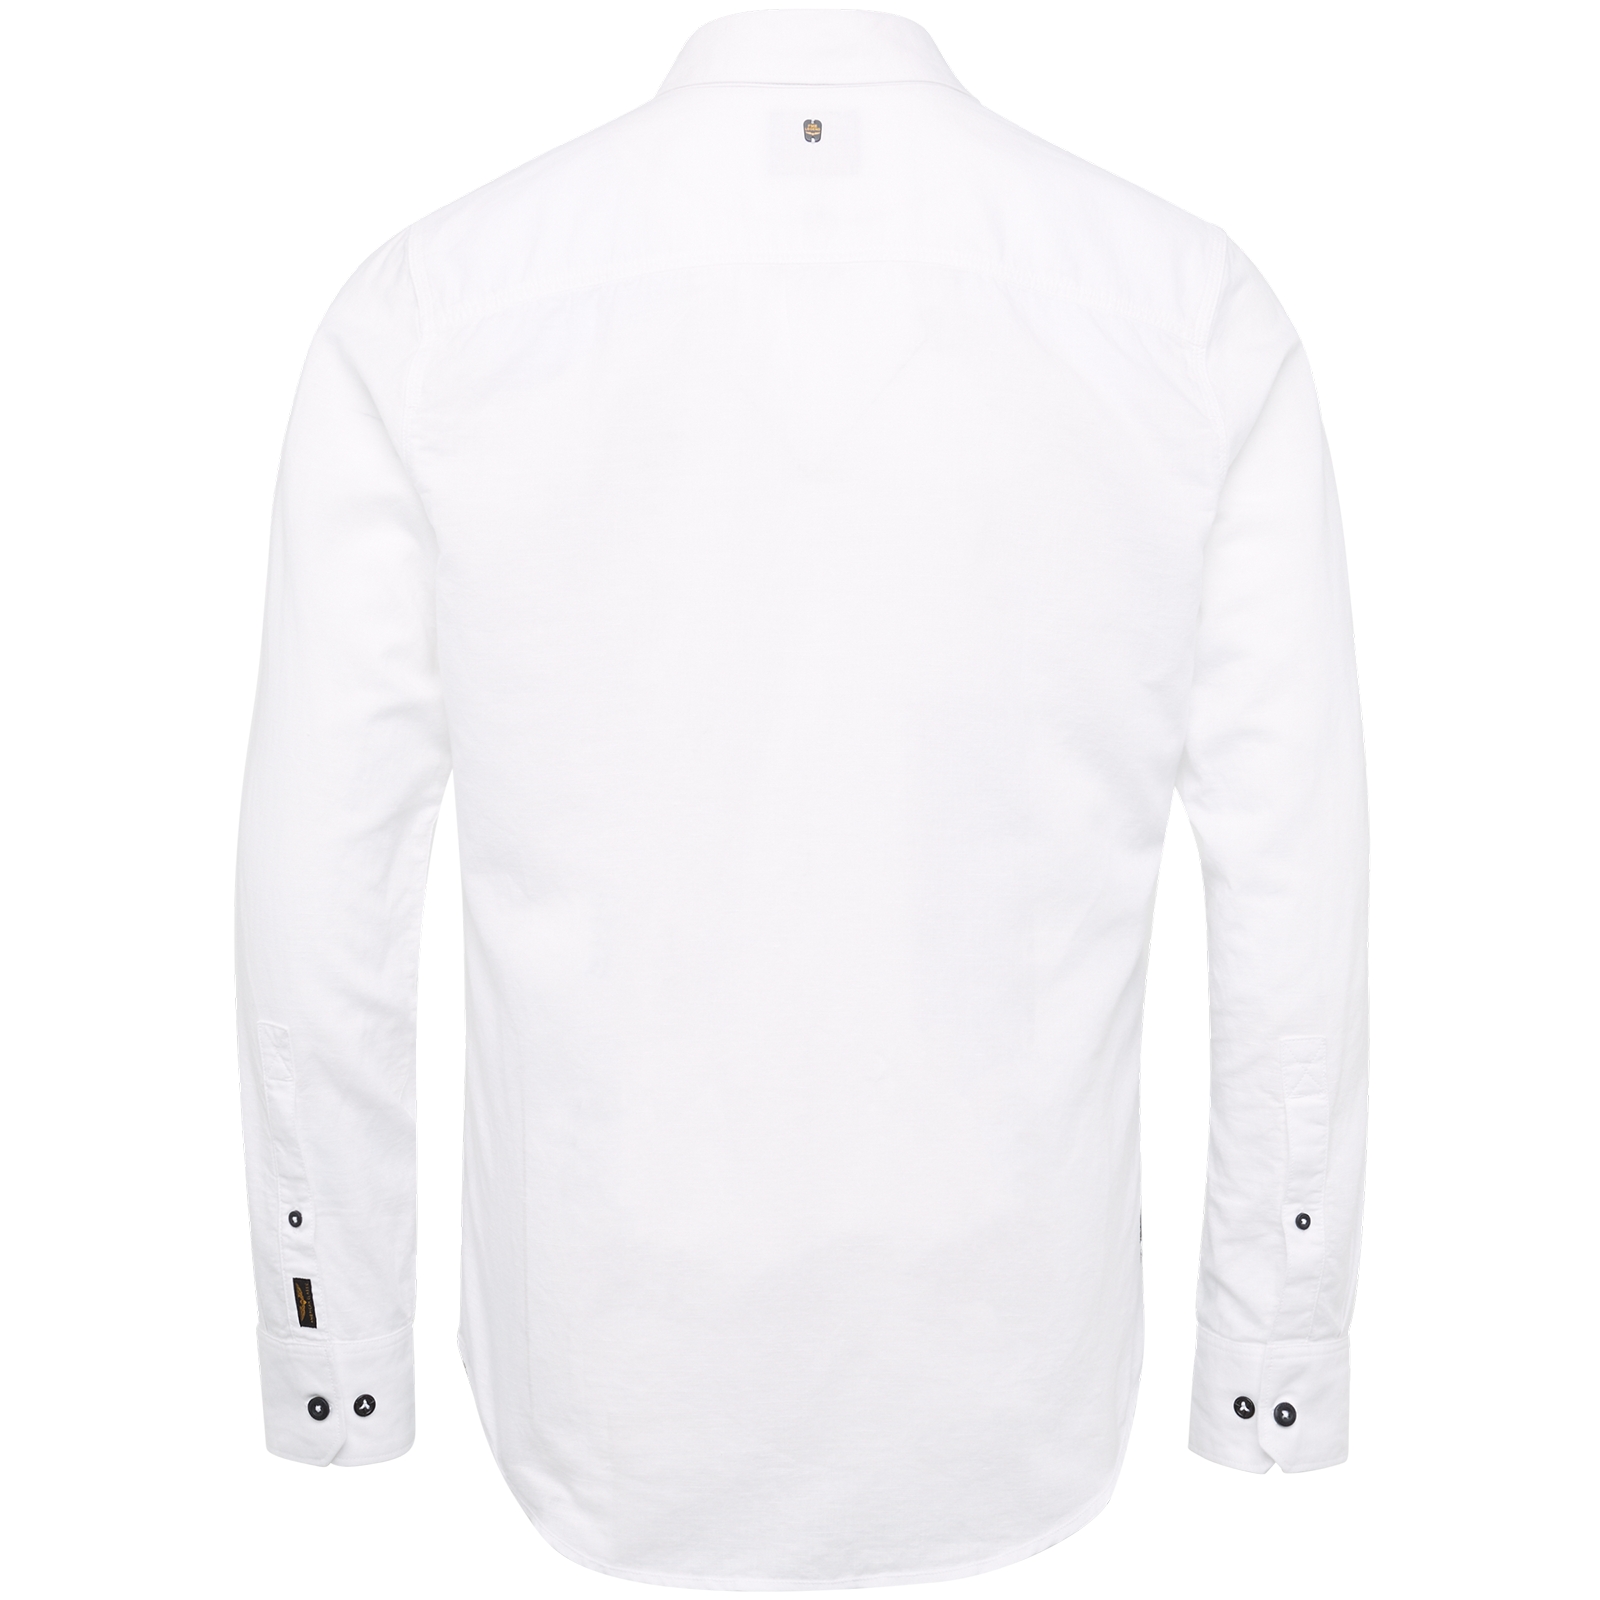 Long Sleeve Shirt Ctn/Linen 2 tone